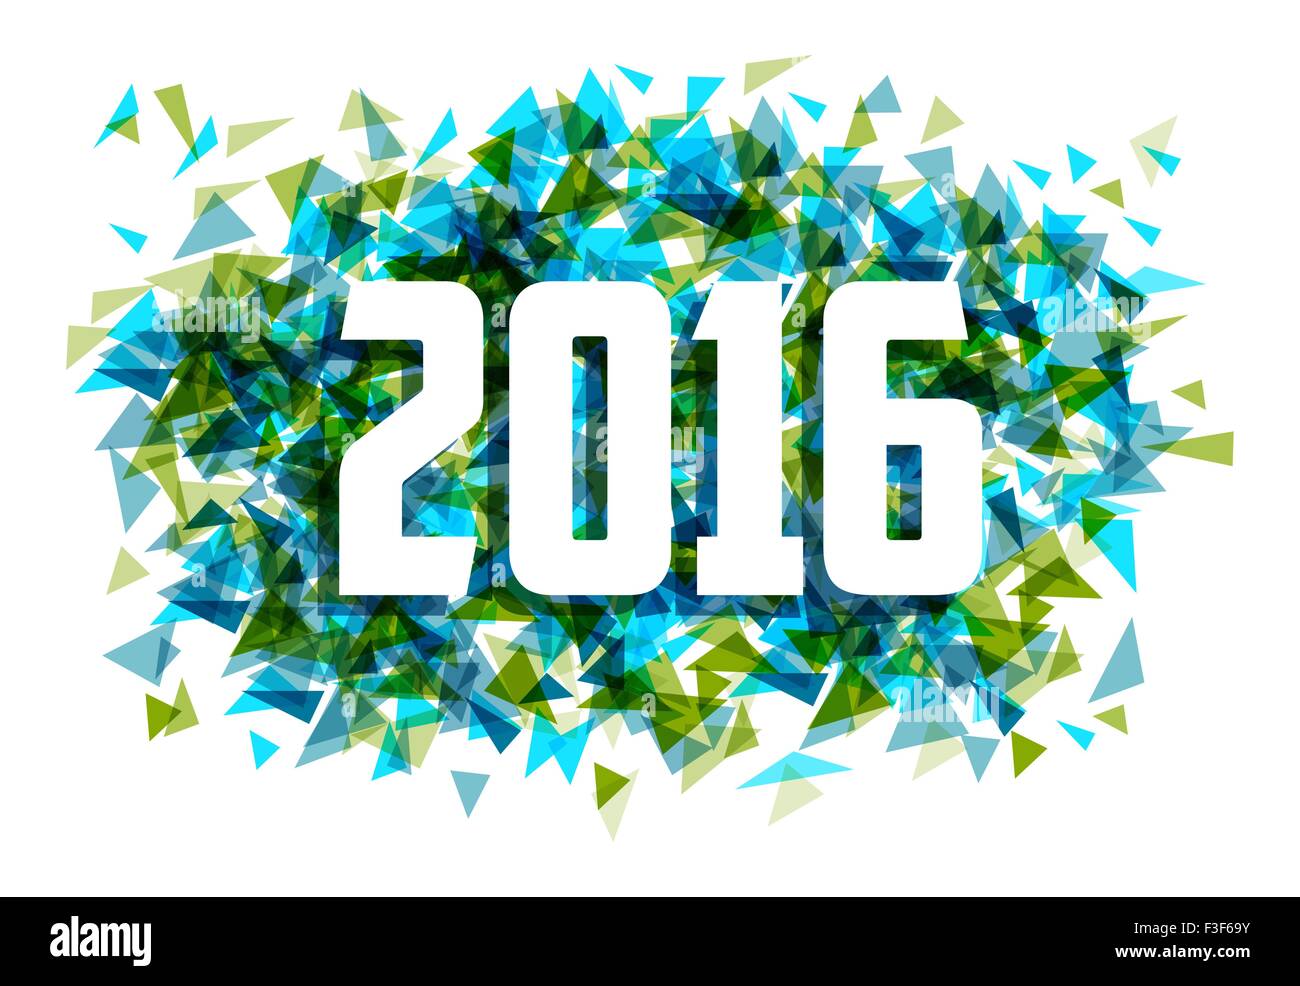 Nouvelle année 2016 célébration triangle coloré résumé carte de souhaits illustration. Vecteur EPS10. Illustration de Vecteur